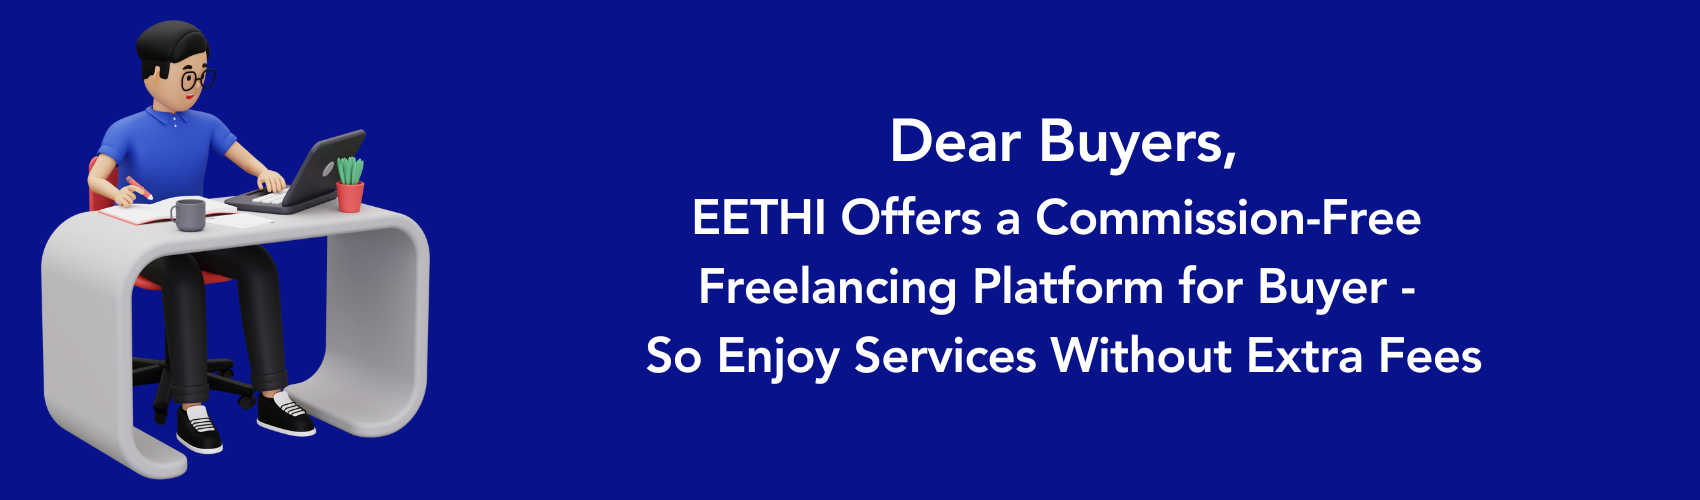 EETHI freelancing platform